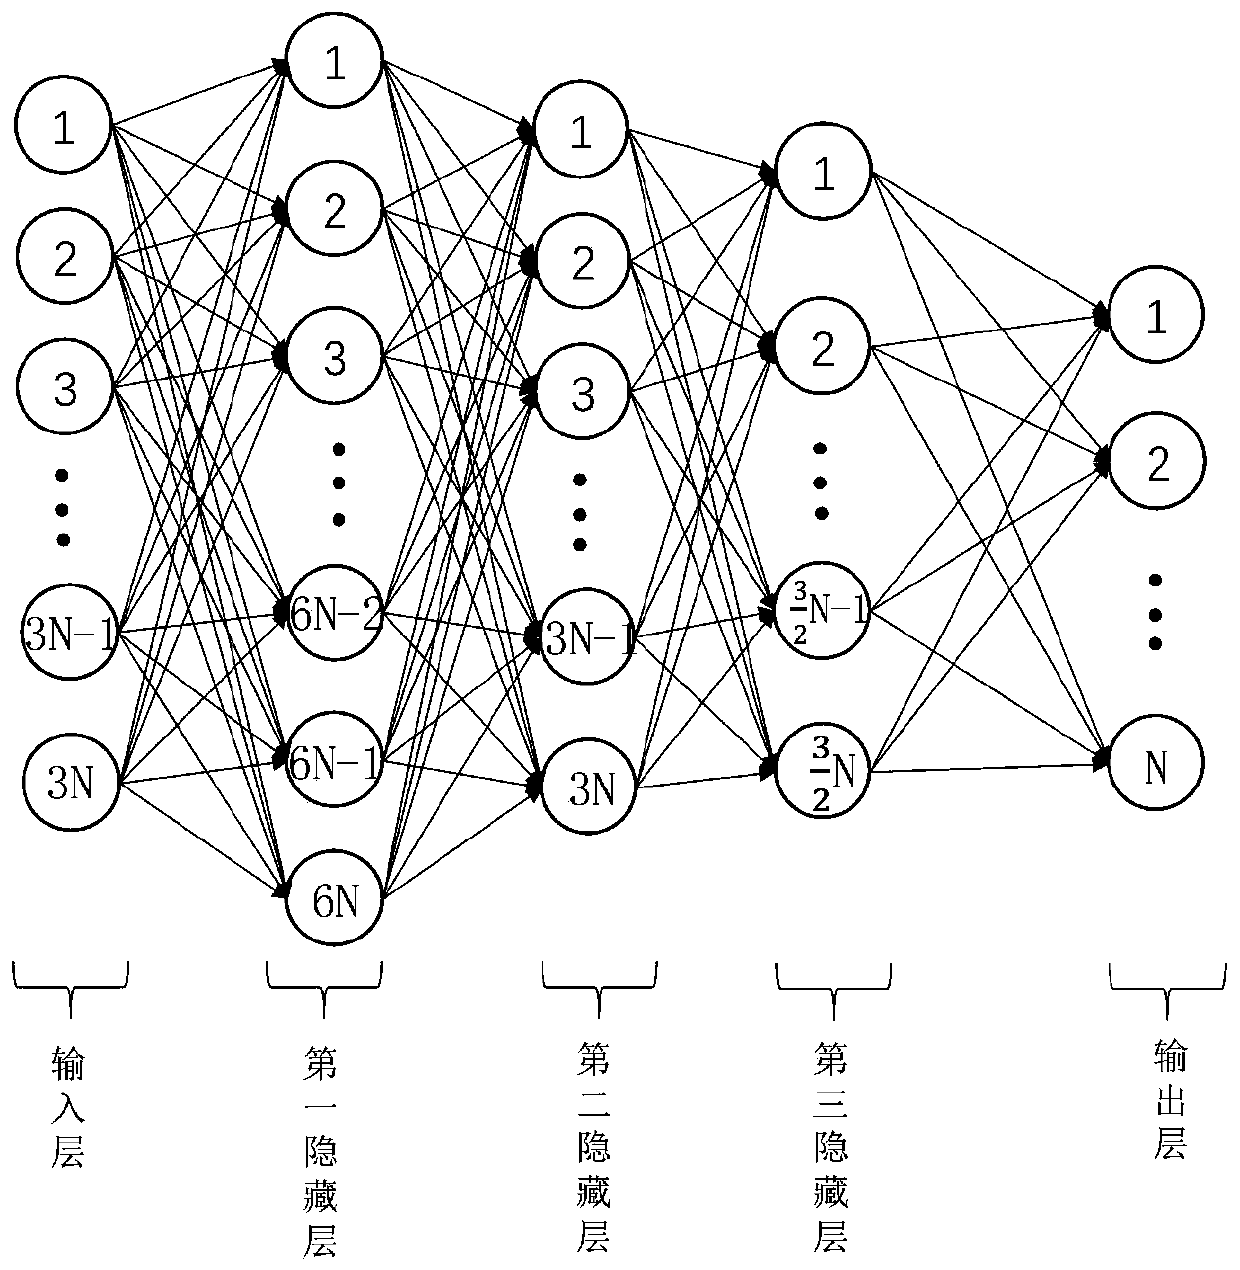 Radar waveform design method based on deep neural network